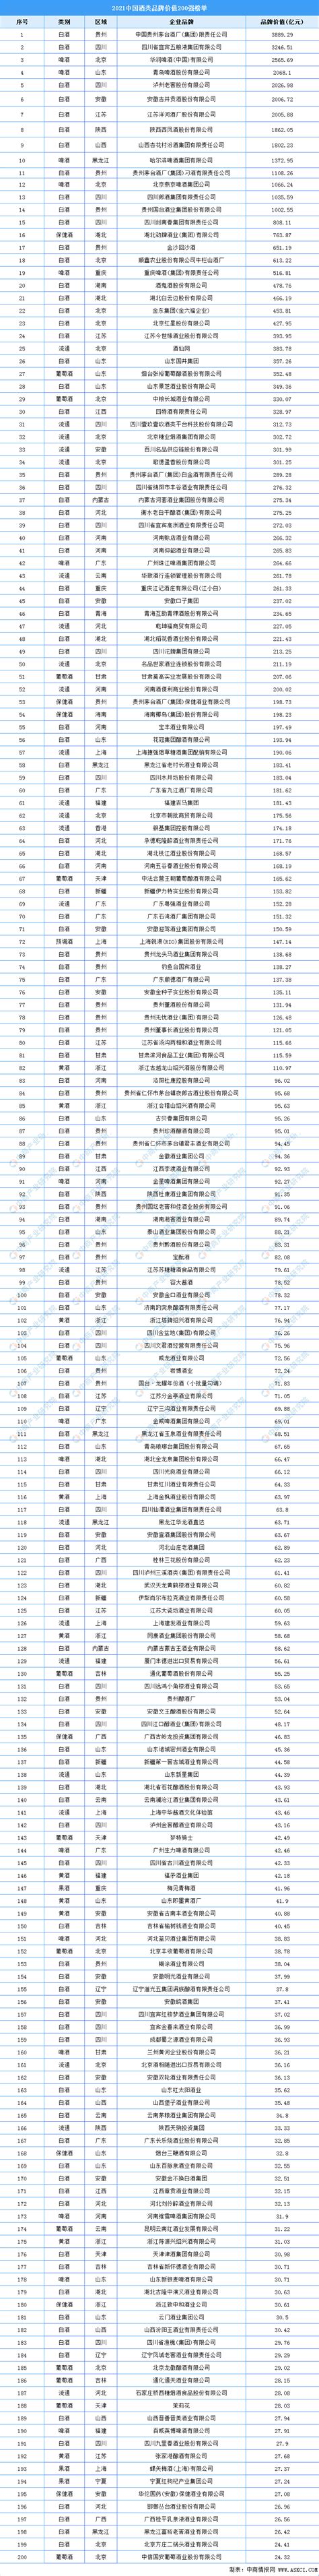 2019年品牌价值排行_2019酒类品牌价值类别排名 中国200强_中国排行网